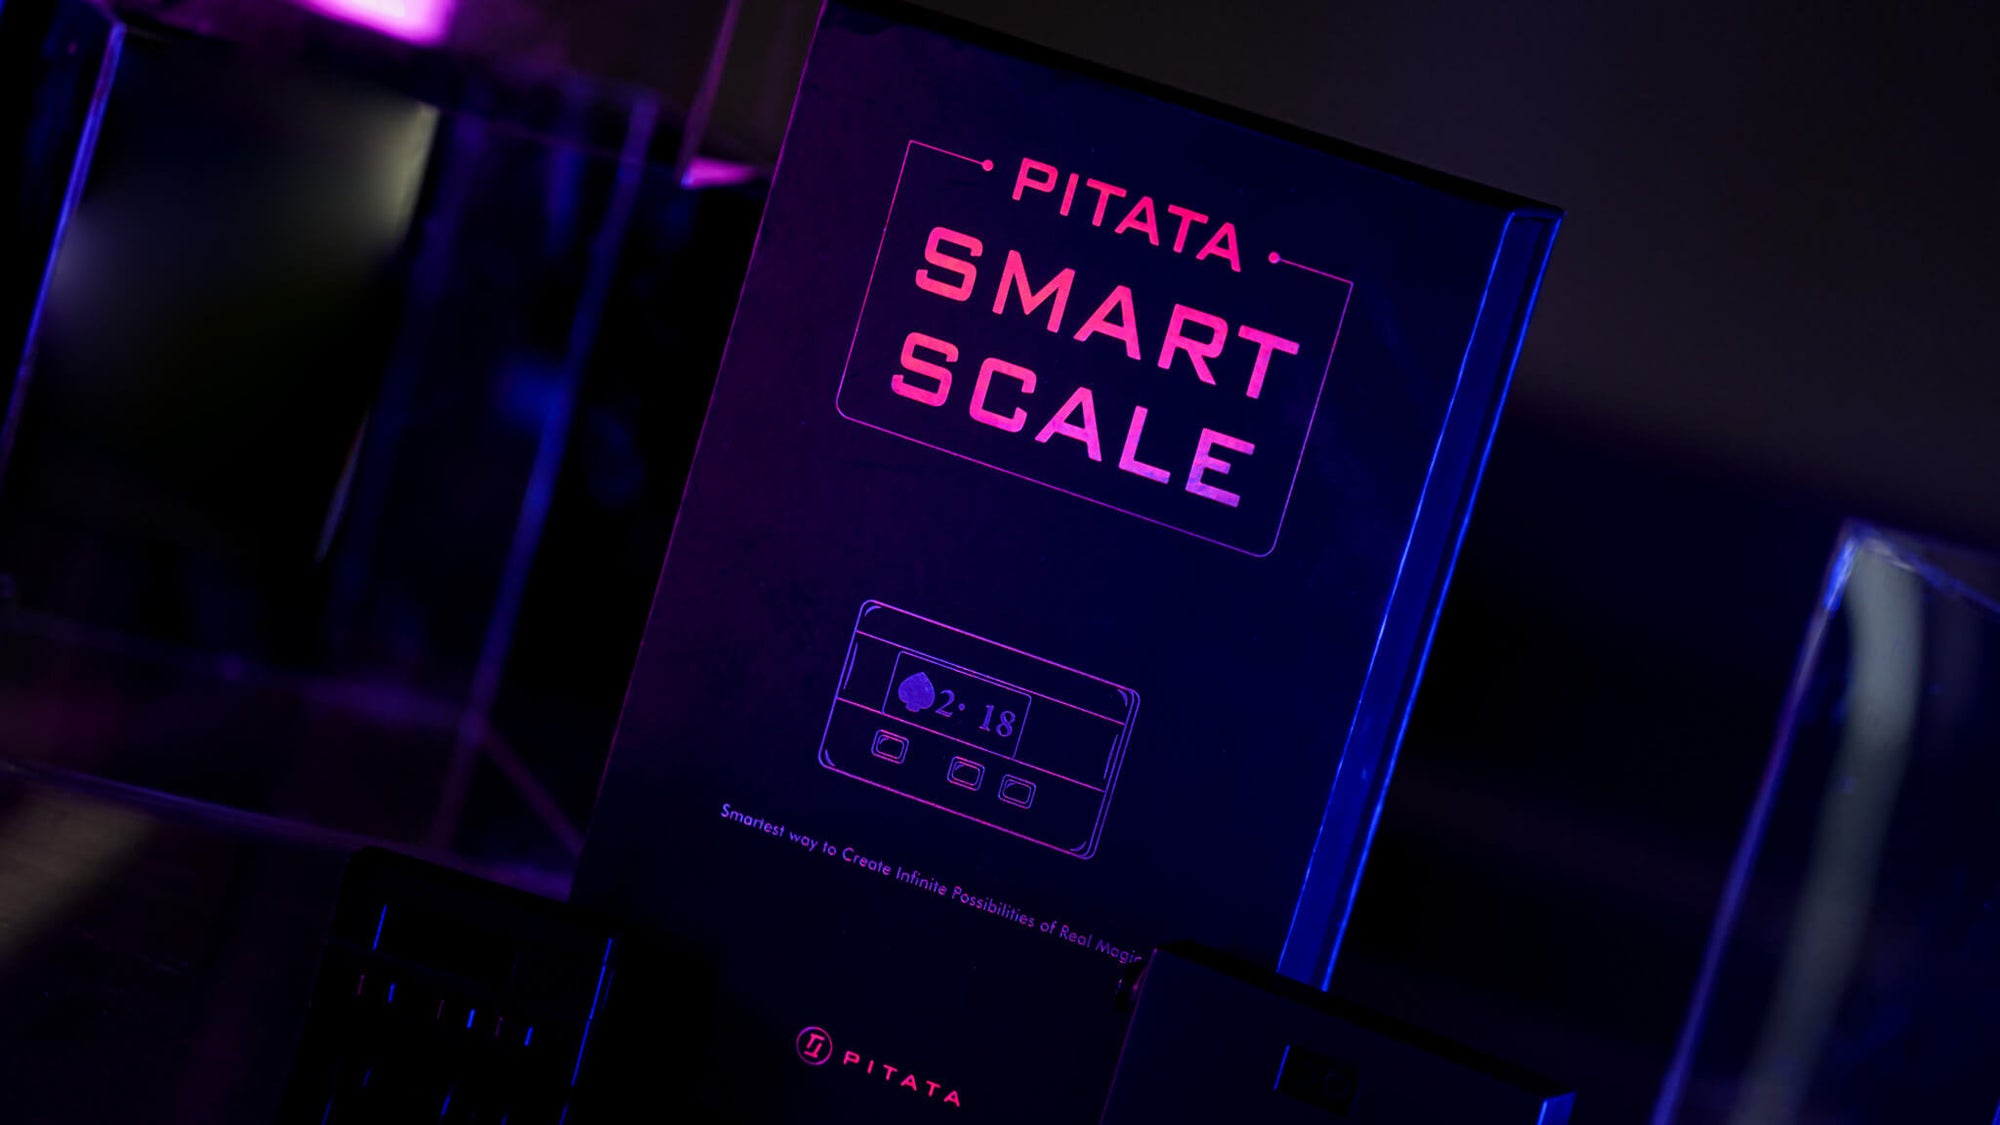 PITATA Smart Scale